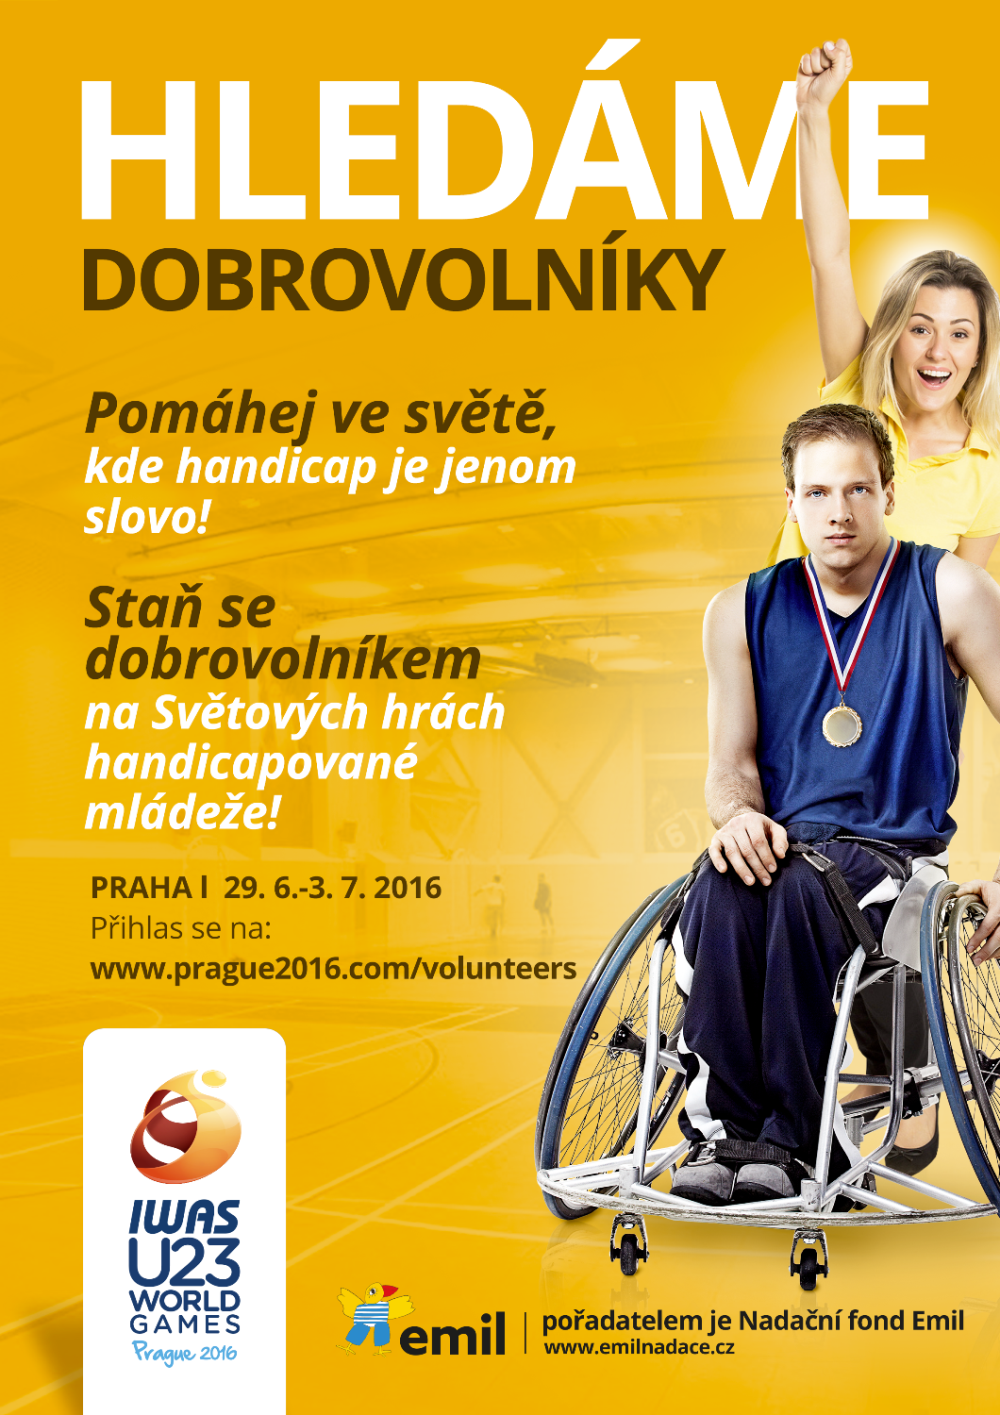 Staňte se dobrovolníky na Světových hrách handicapované mládeže!